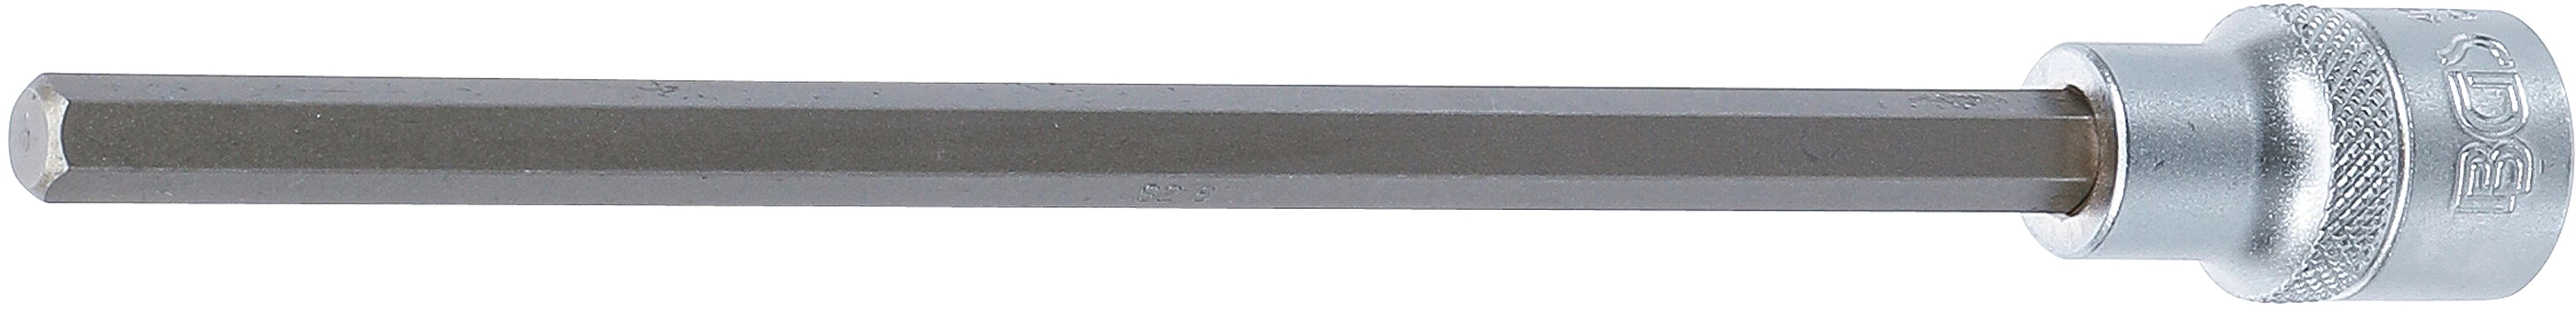 Bit-Einsatz - Länge 200 mm - 12,5 mm (1/2") - Innensechskant 8 mm